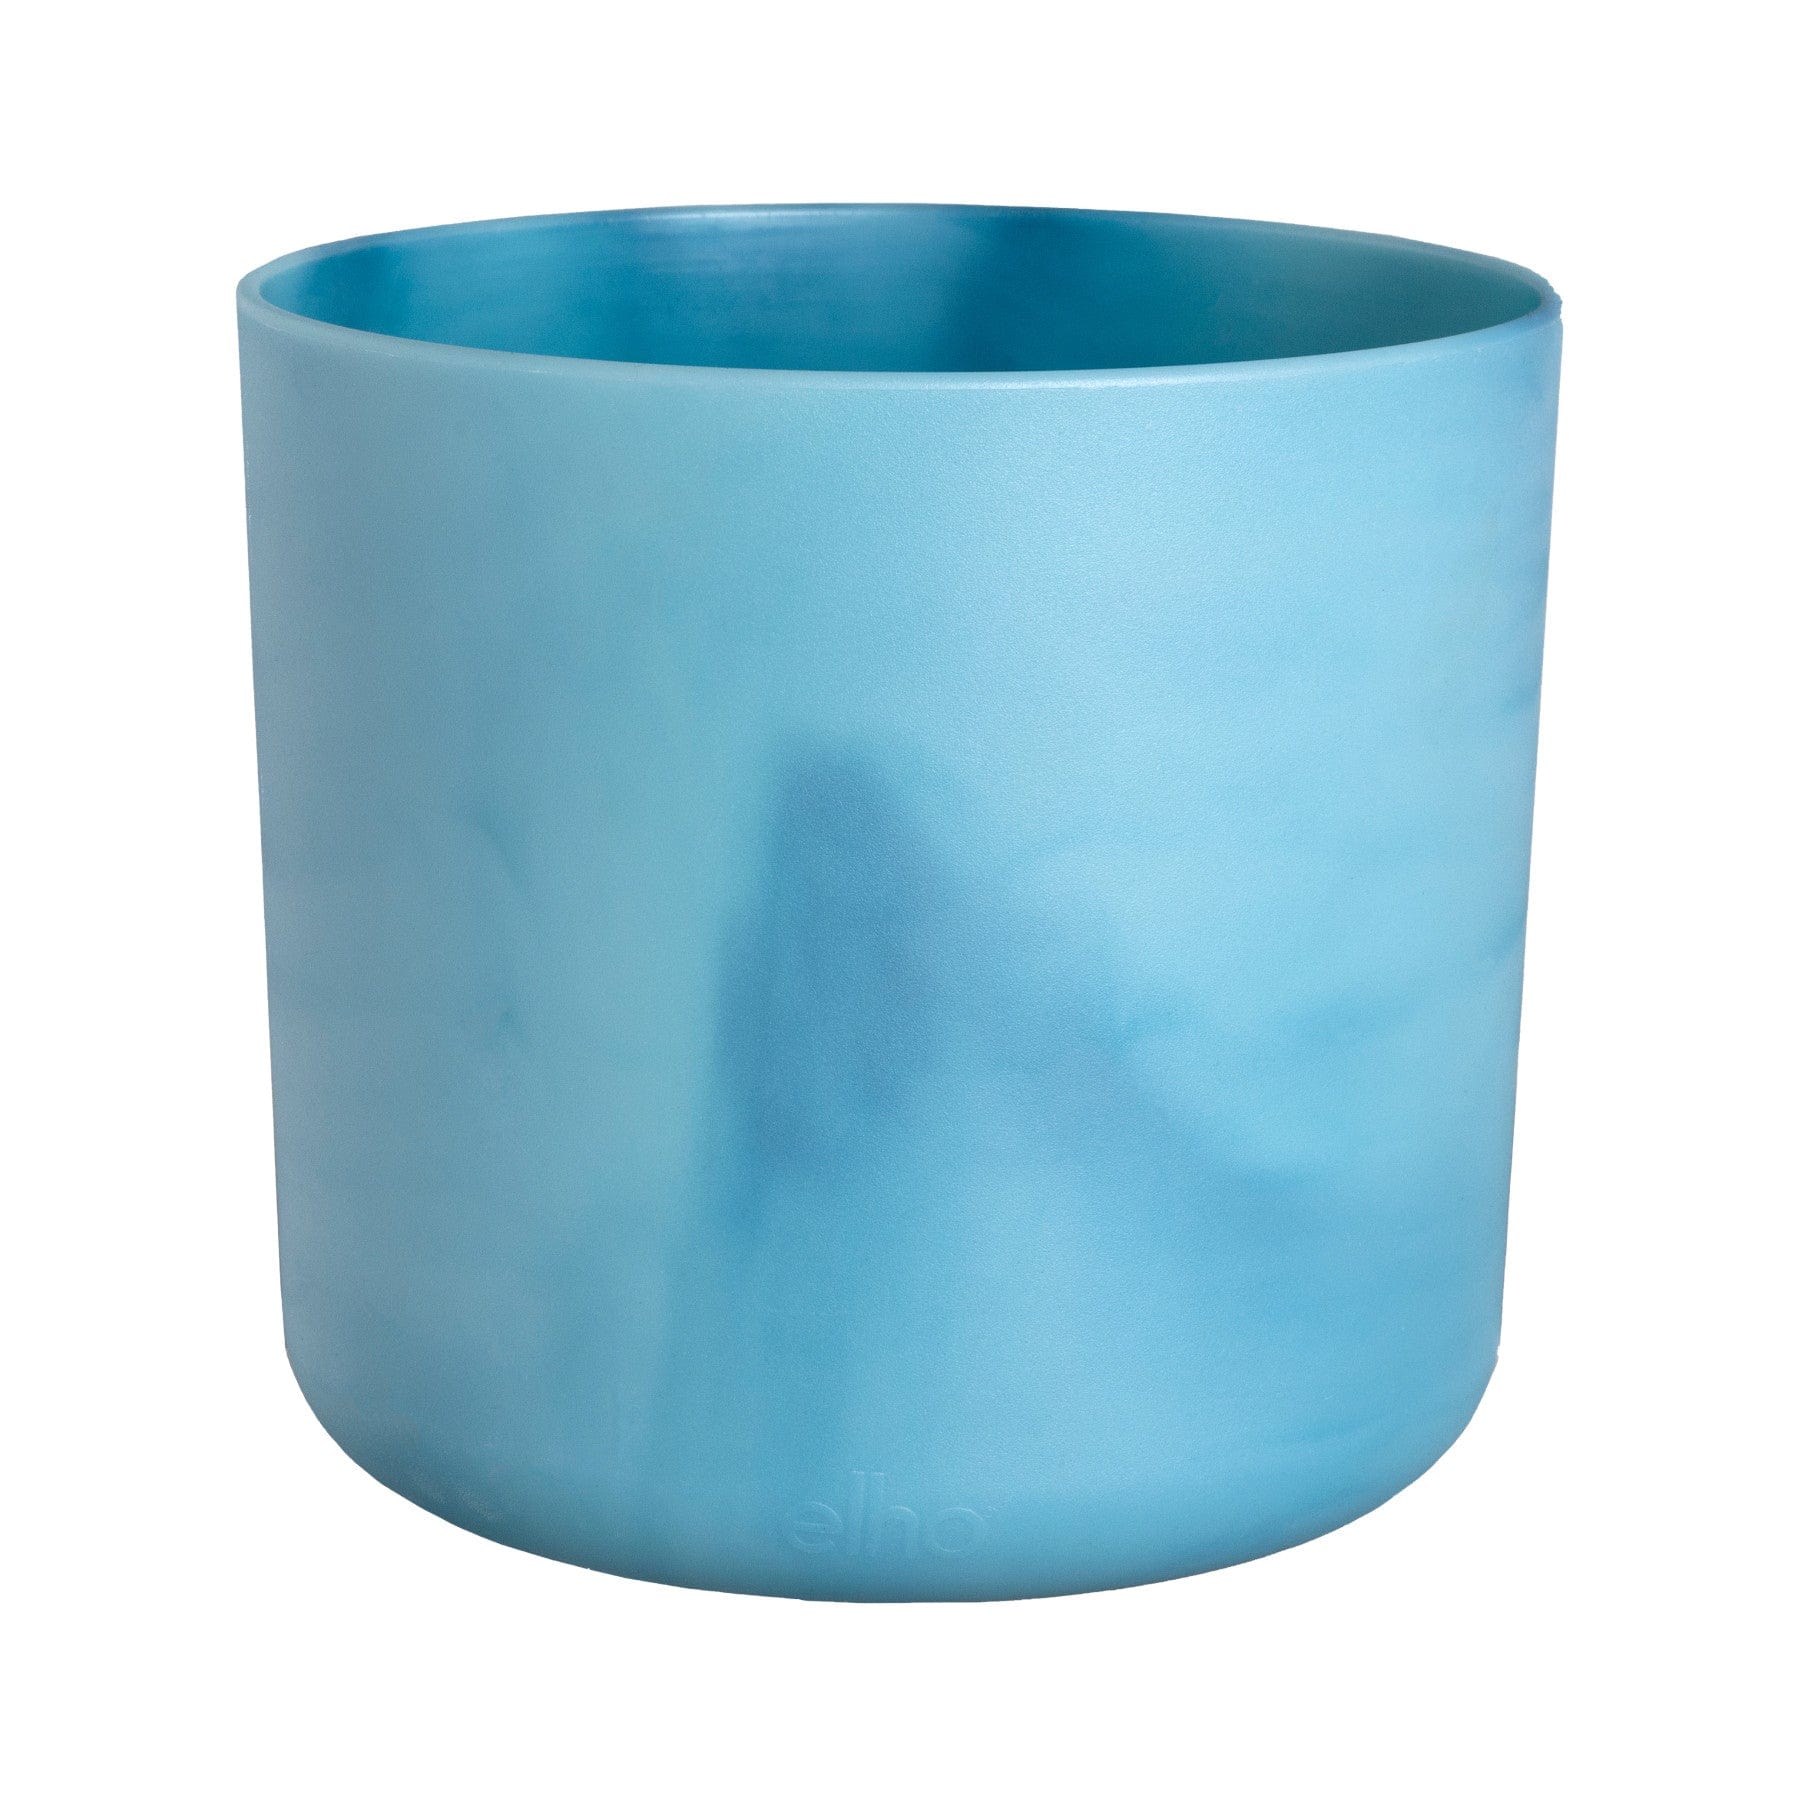 Blue Elho branded plastic plant pot on white background